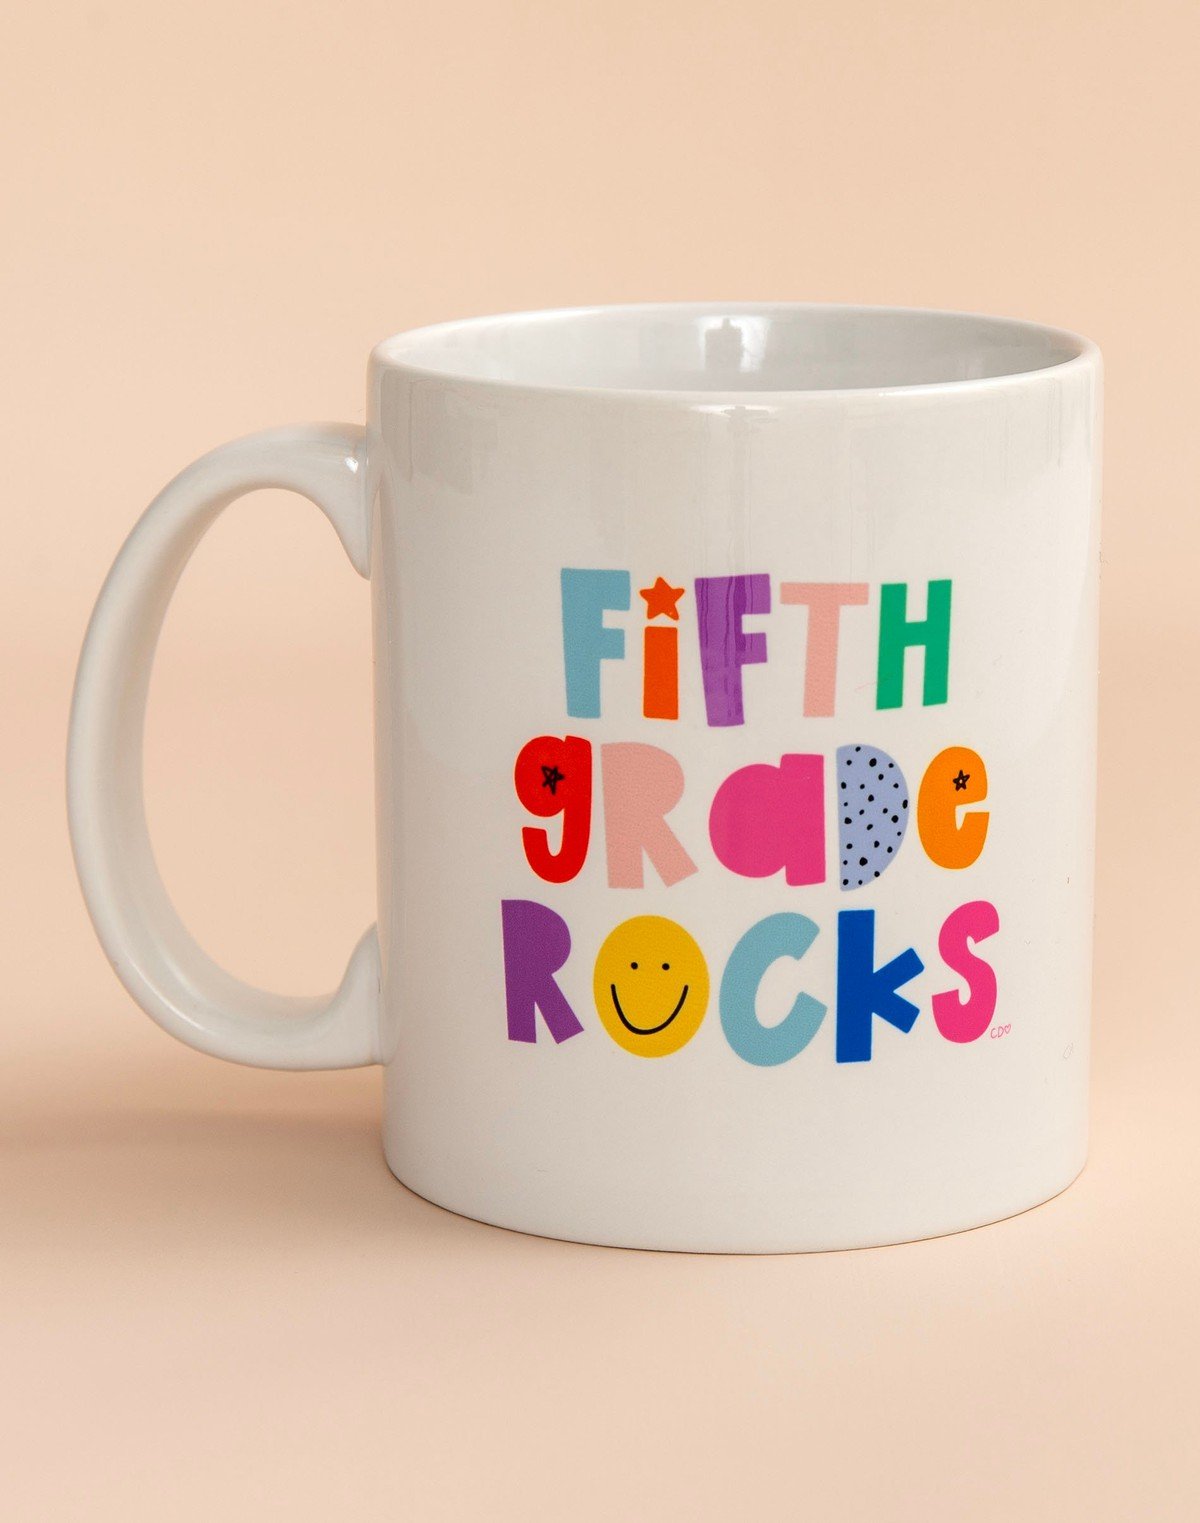 Fifth Grade Rocks Mug item